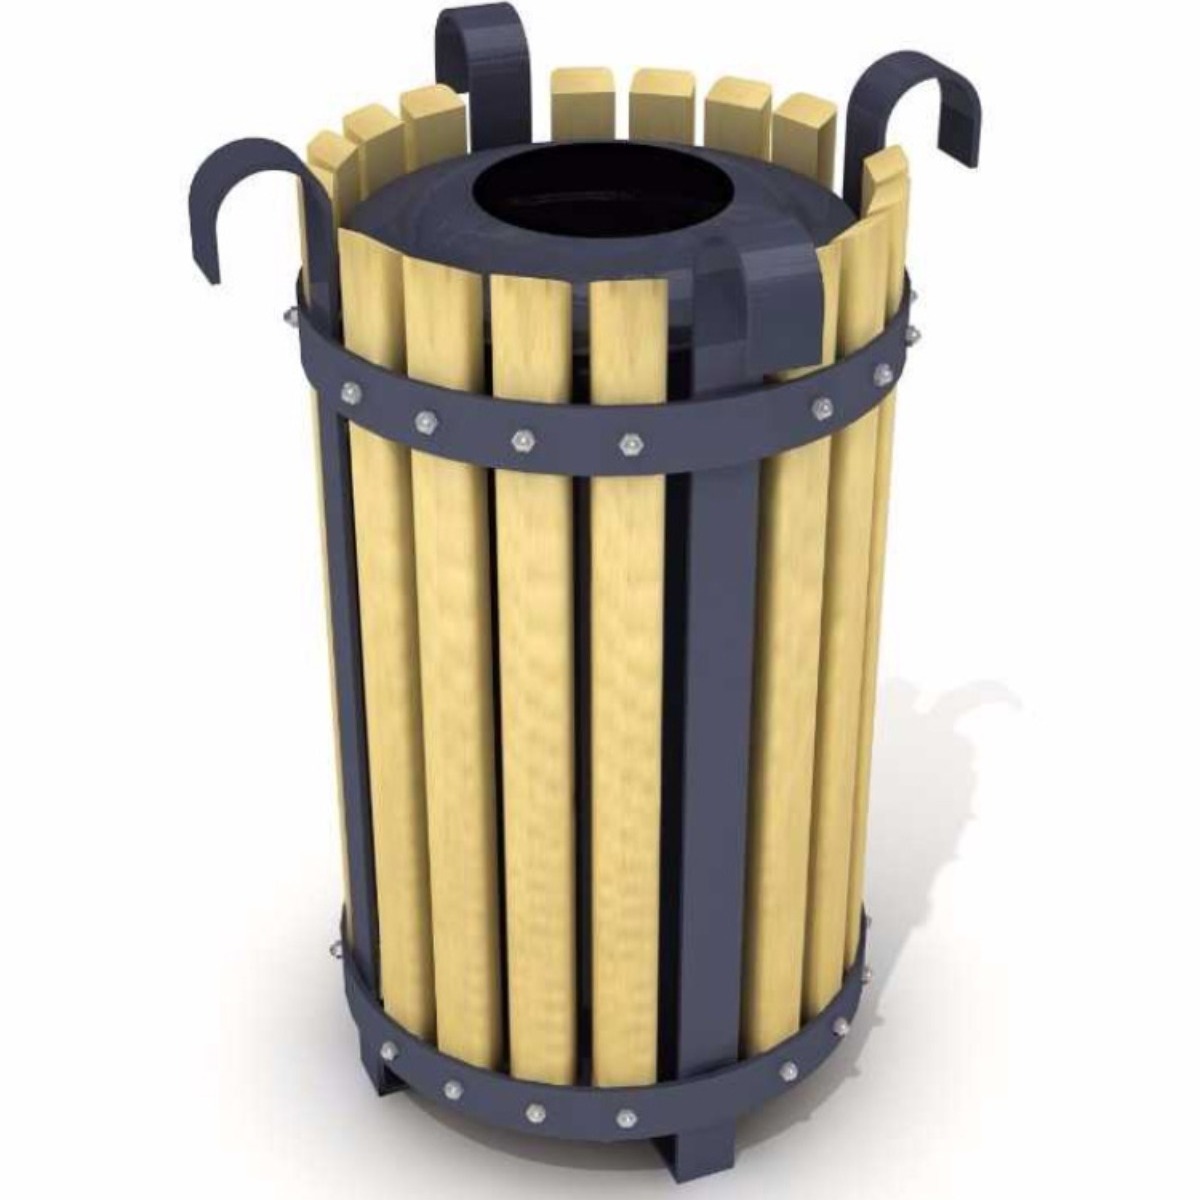 AB-503 Wood Open Space Trash Can adlı ürünün logosu